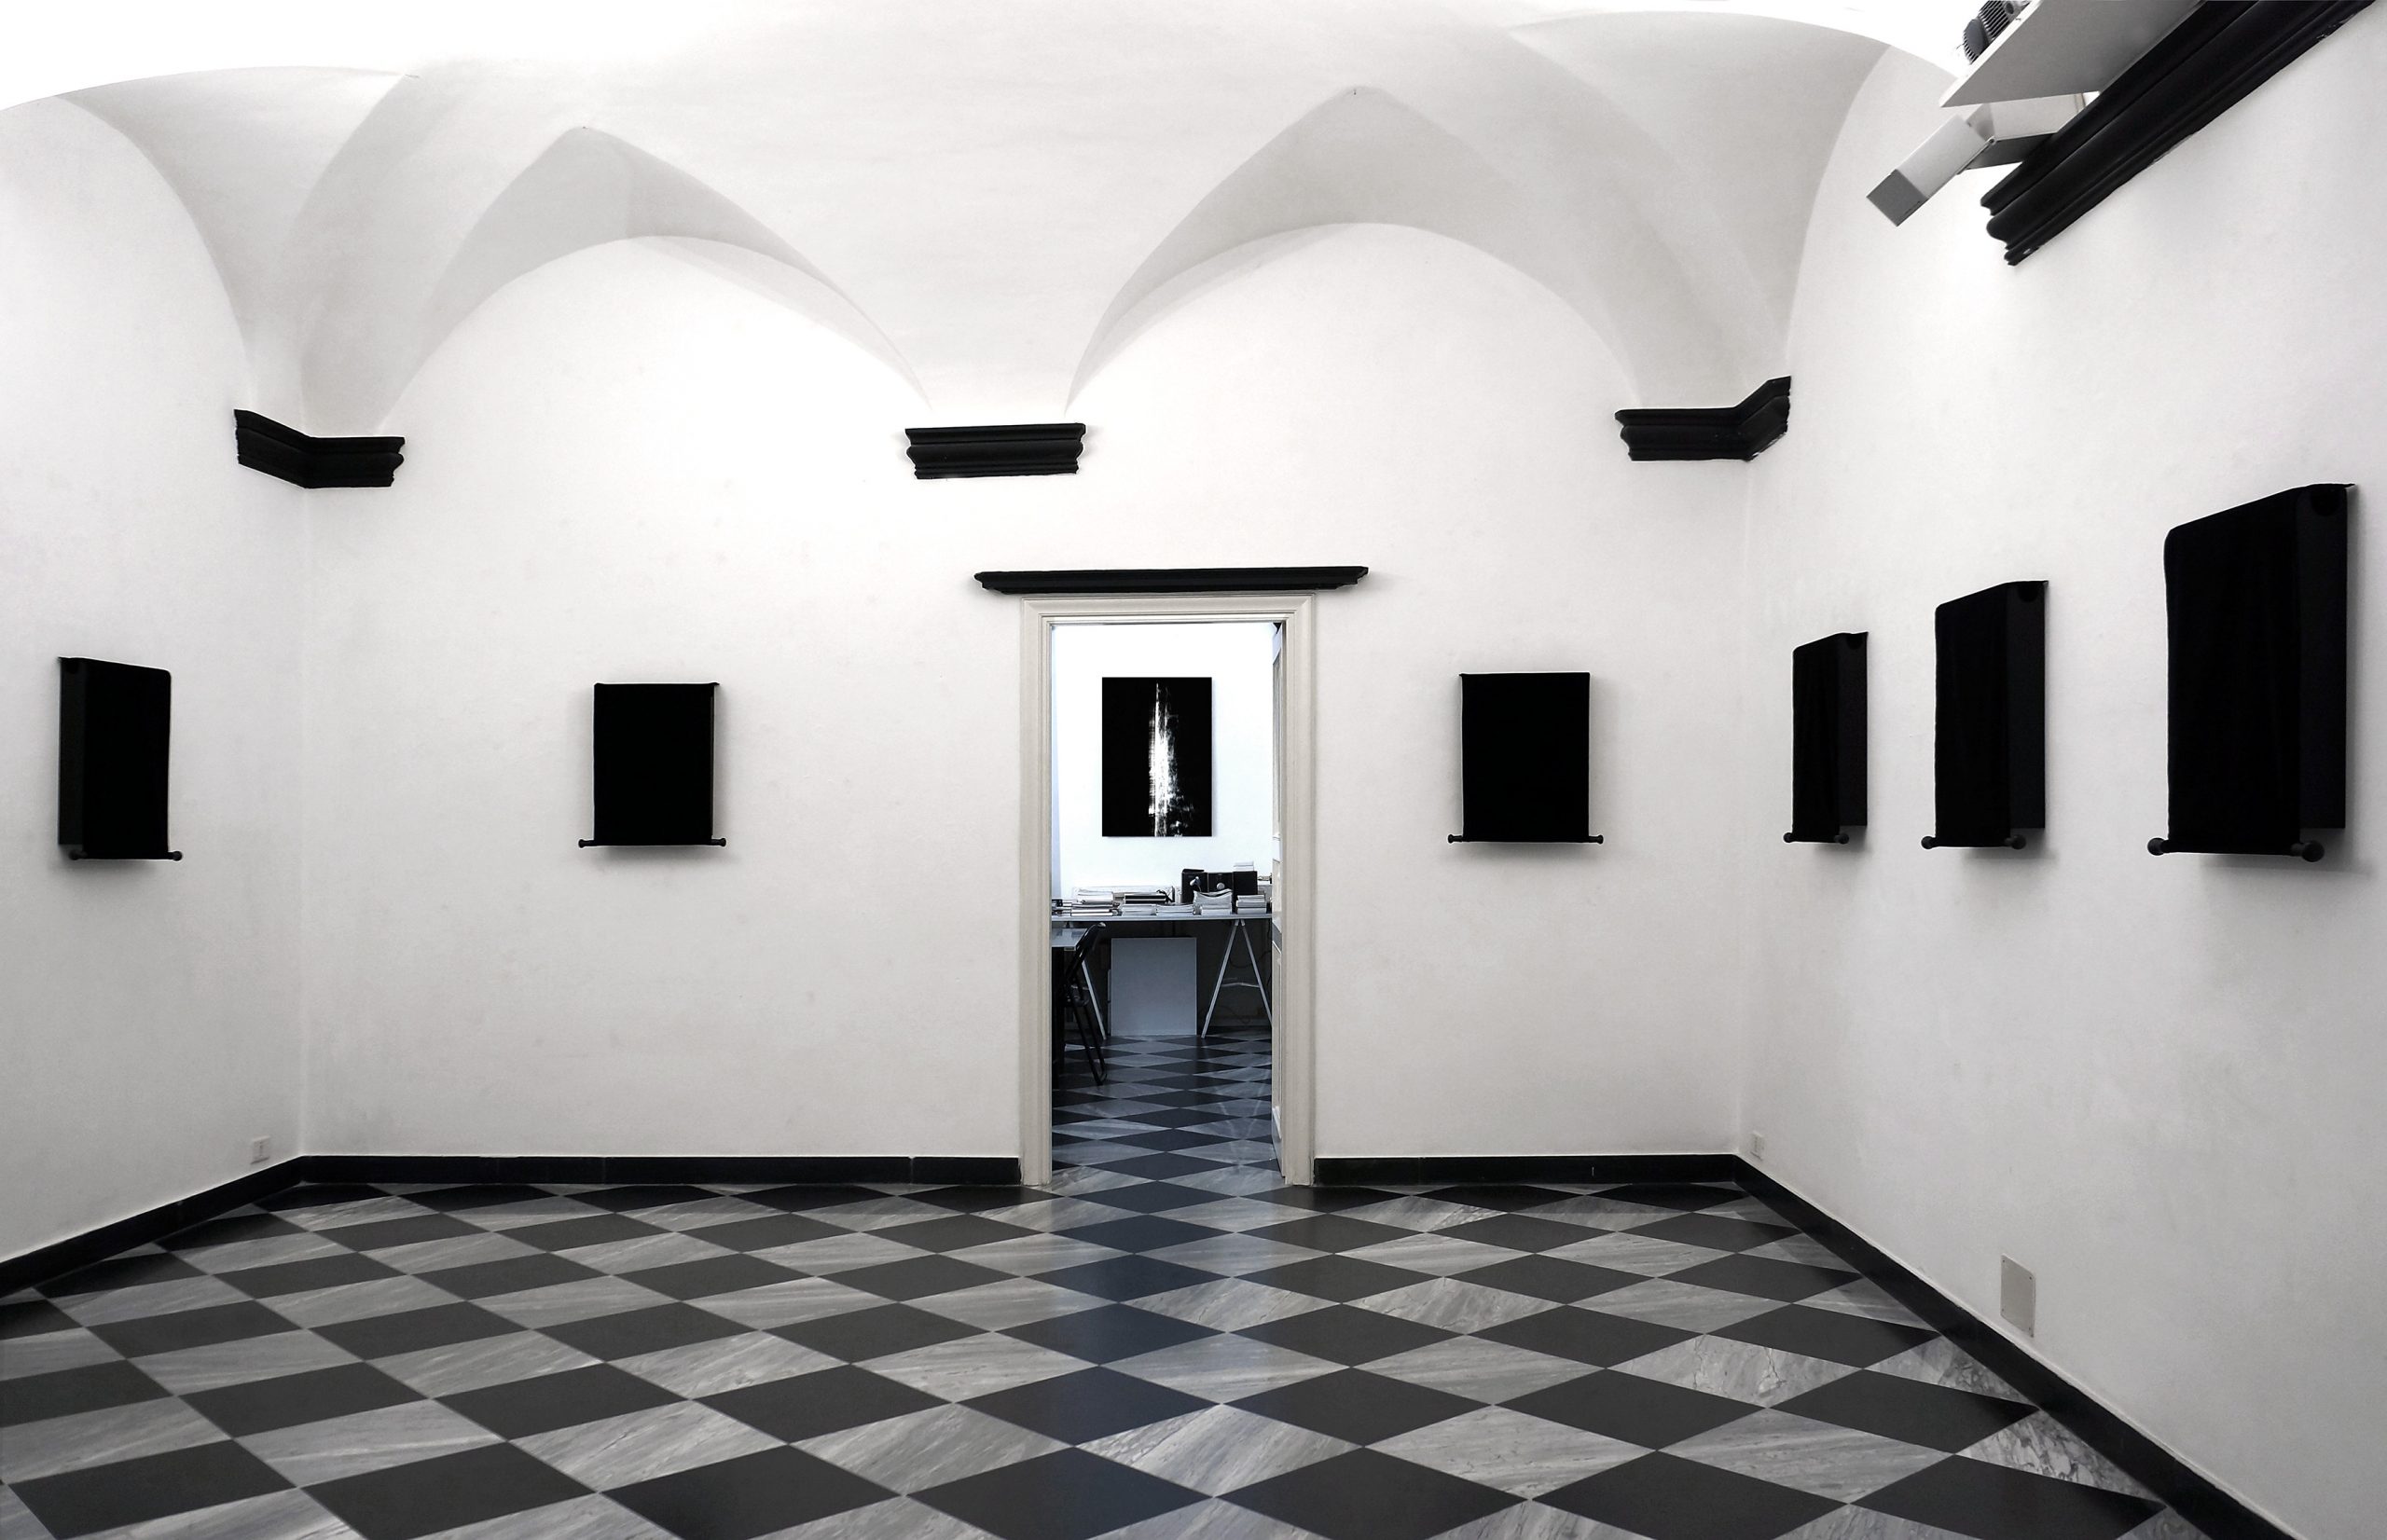 Shivah, Simple Codes, in mostra personale Doppia Verità, Galleria Unimedia Modern, Genova, 2017. ©Silvio Wolf